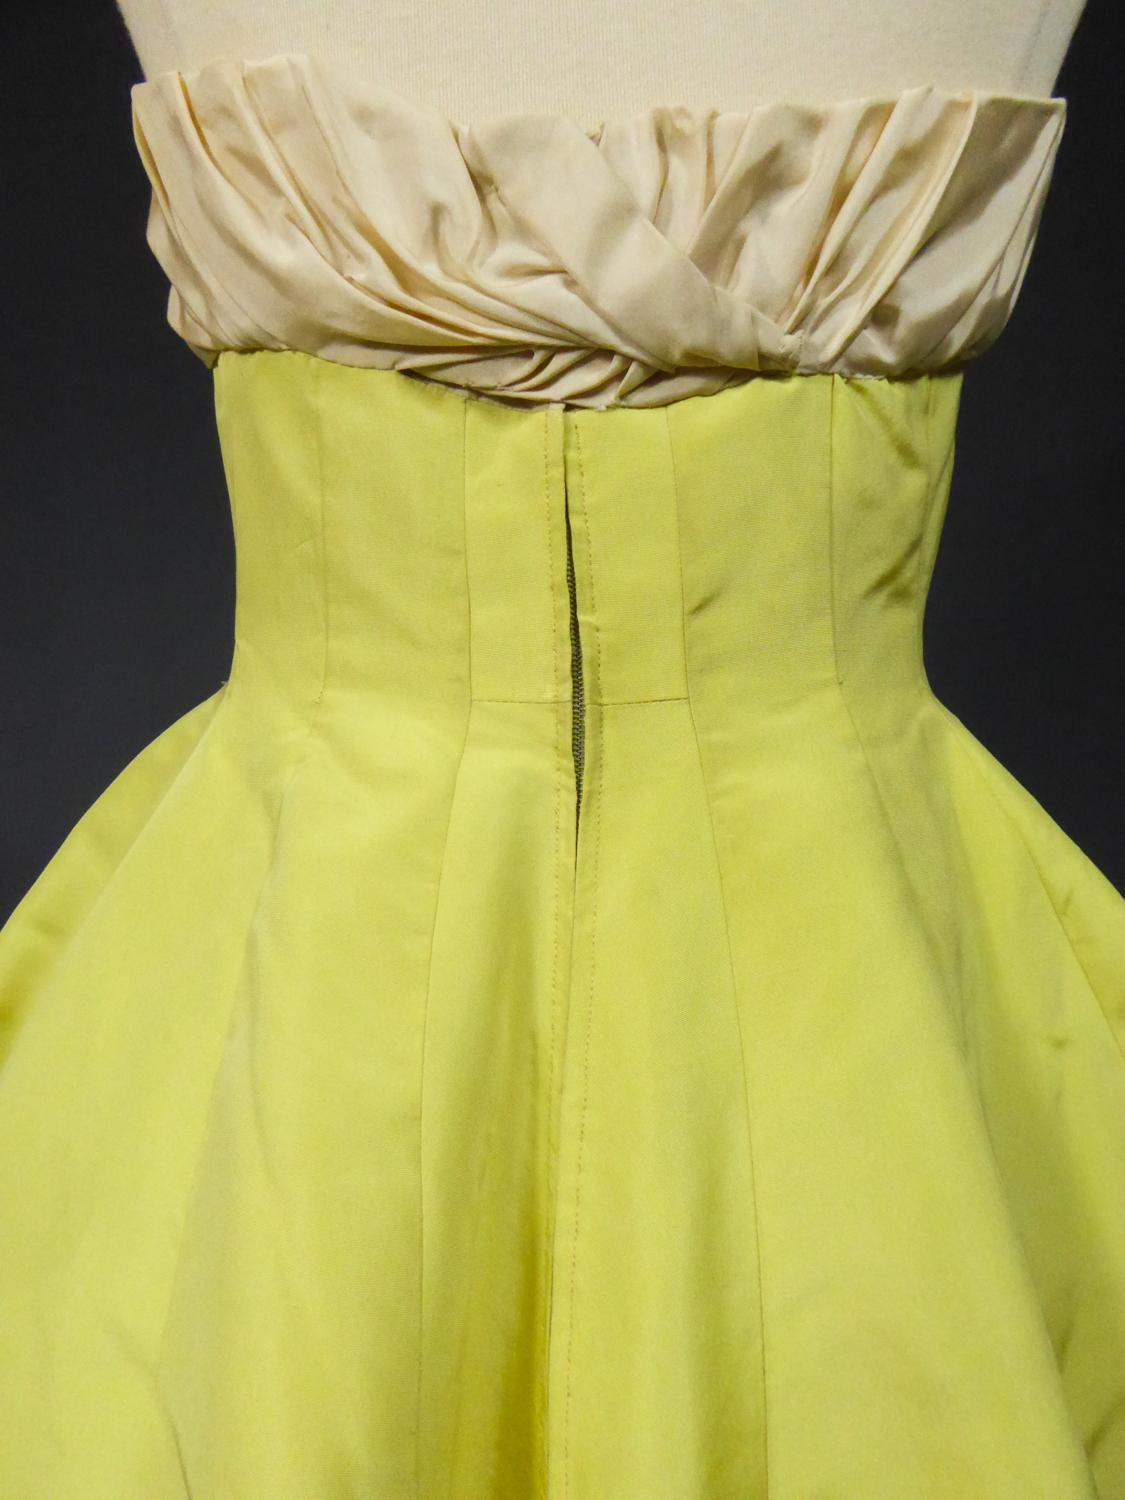 A Pierre Balmain Ottoman Silk Faille Couture Ball-Gown N° 83213 Paris Circa 1958 For Sale 6